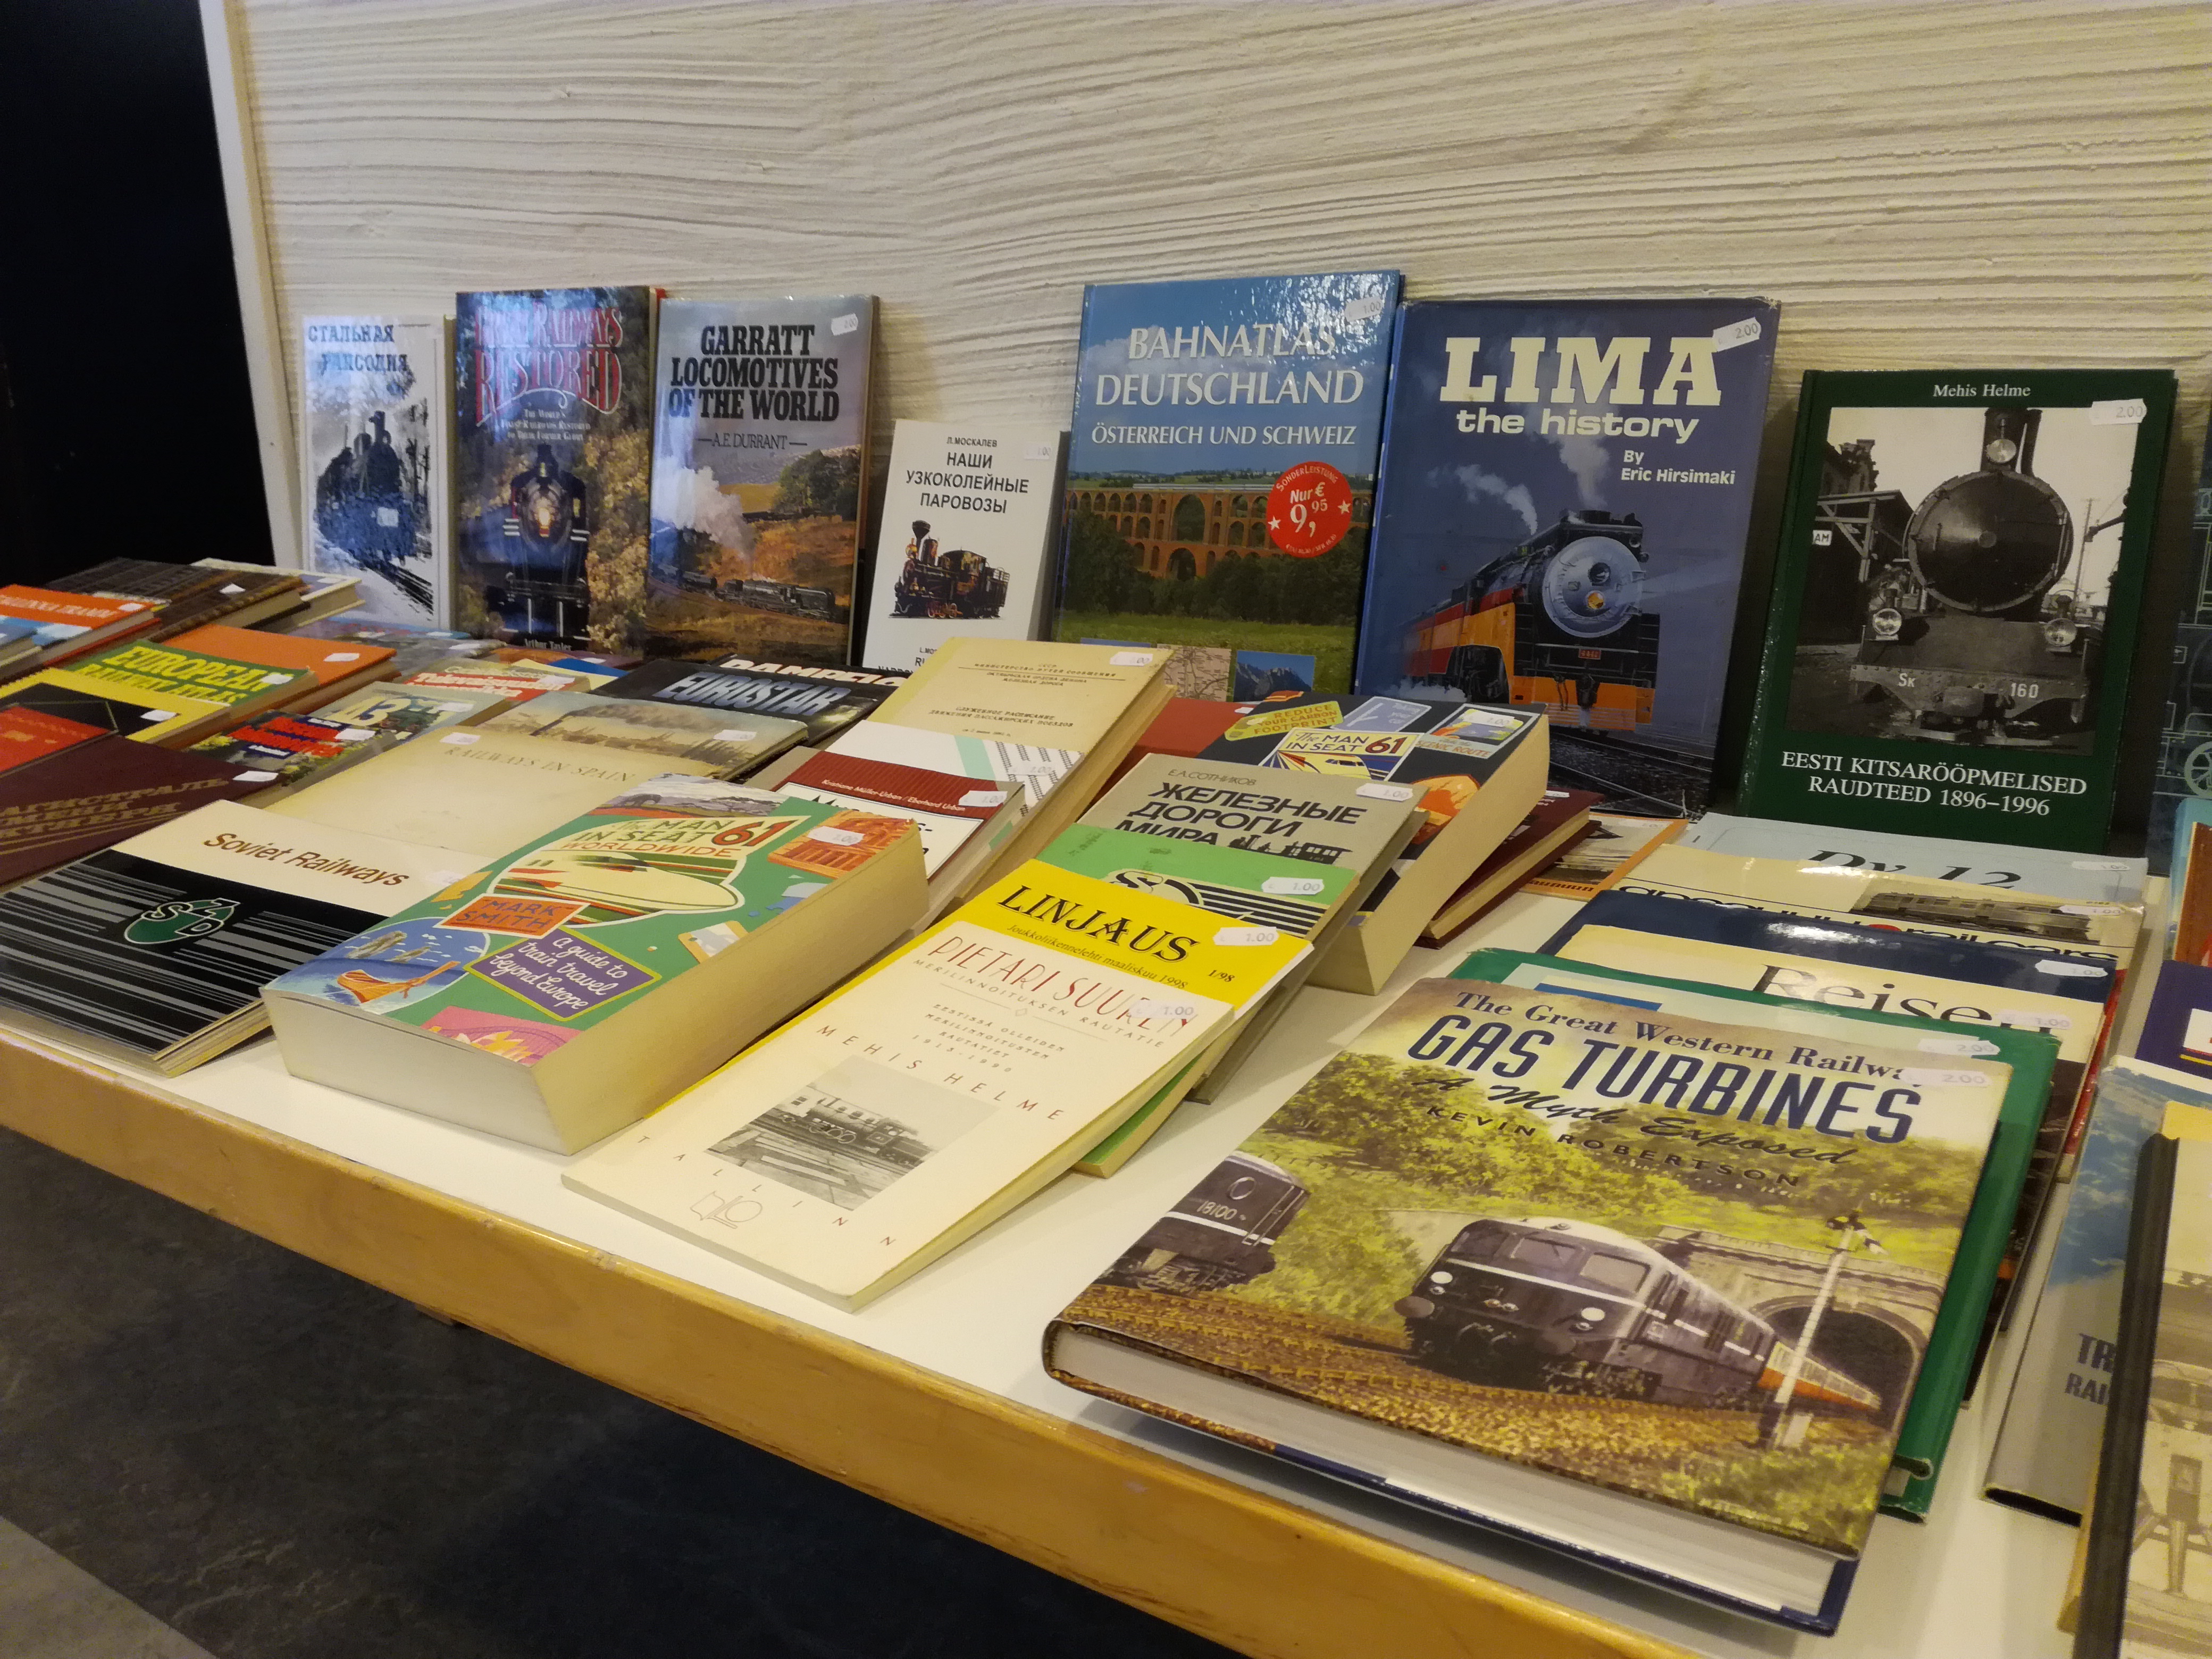 Rautatieaiheisia kirjoja on esillä Rautatiemuseon kokoustilan pöydillä.